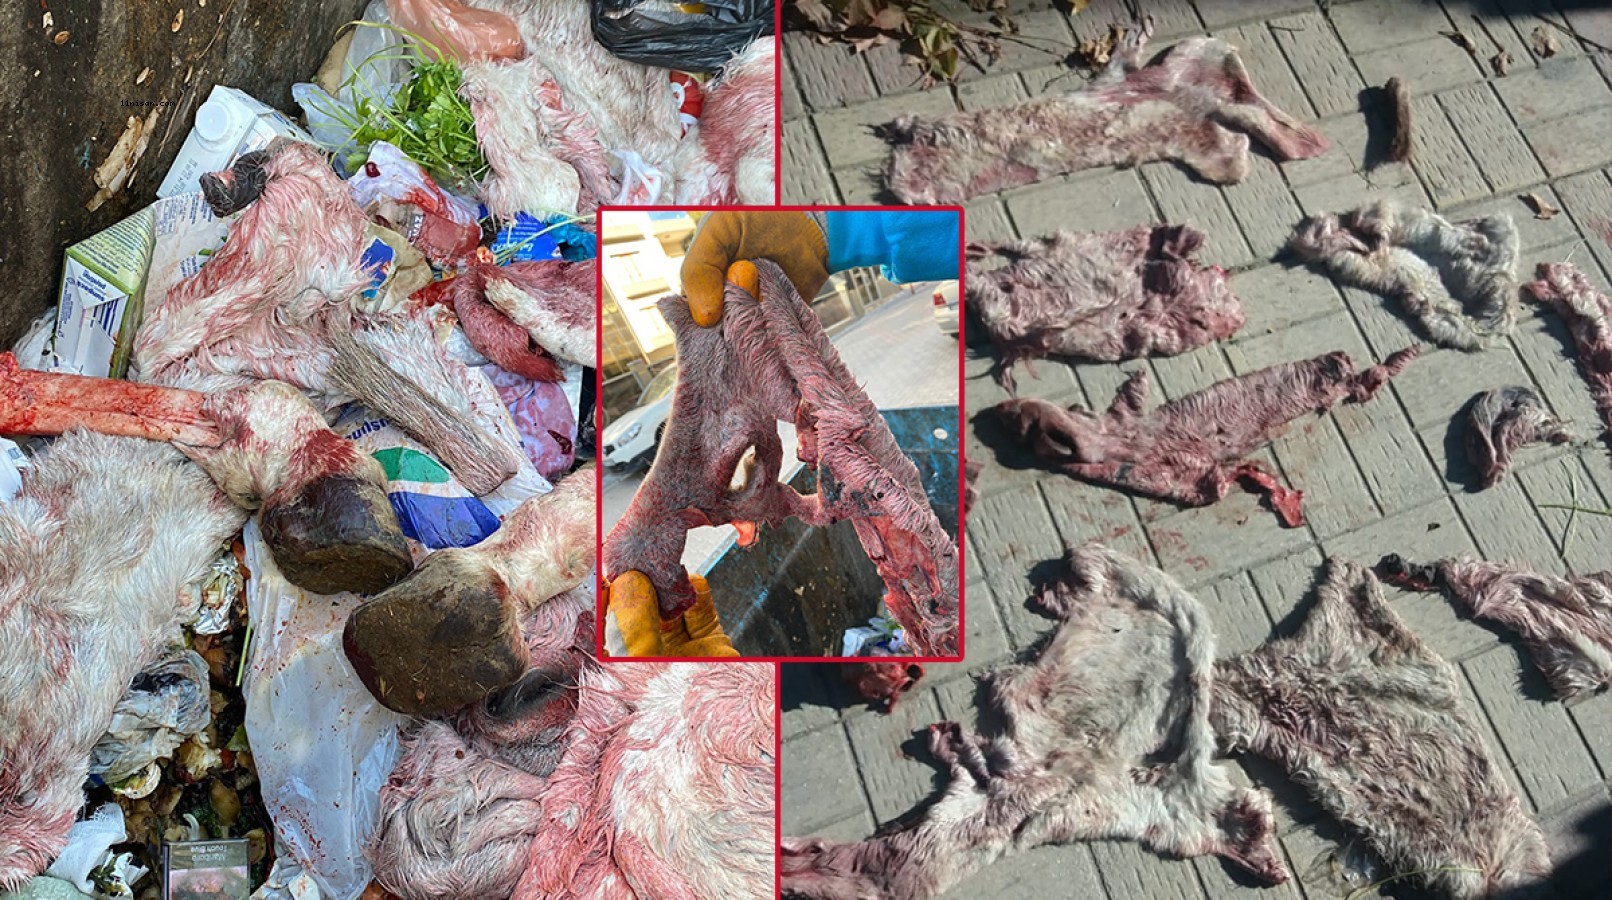 Urfa’da çöpte eşeğe ait olduğu ileri sürülen deri ve kemikler bulundu